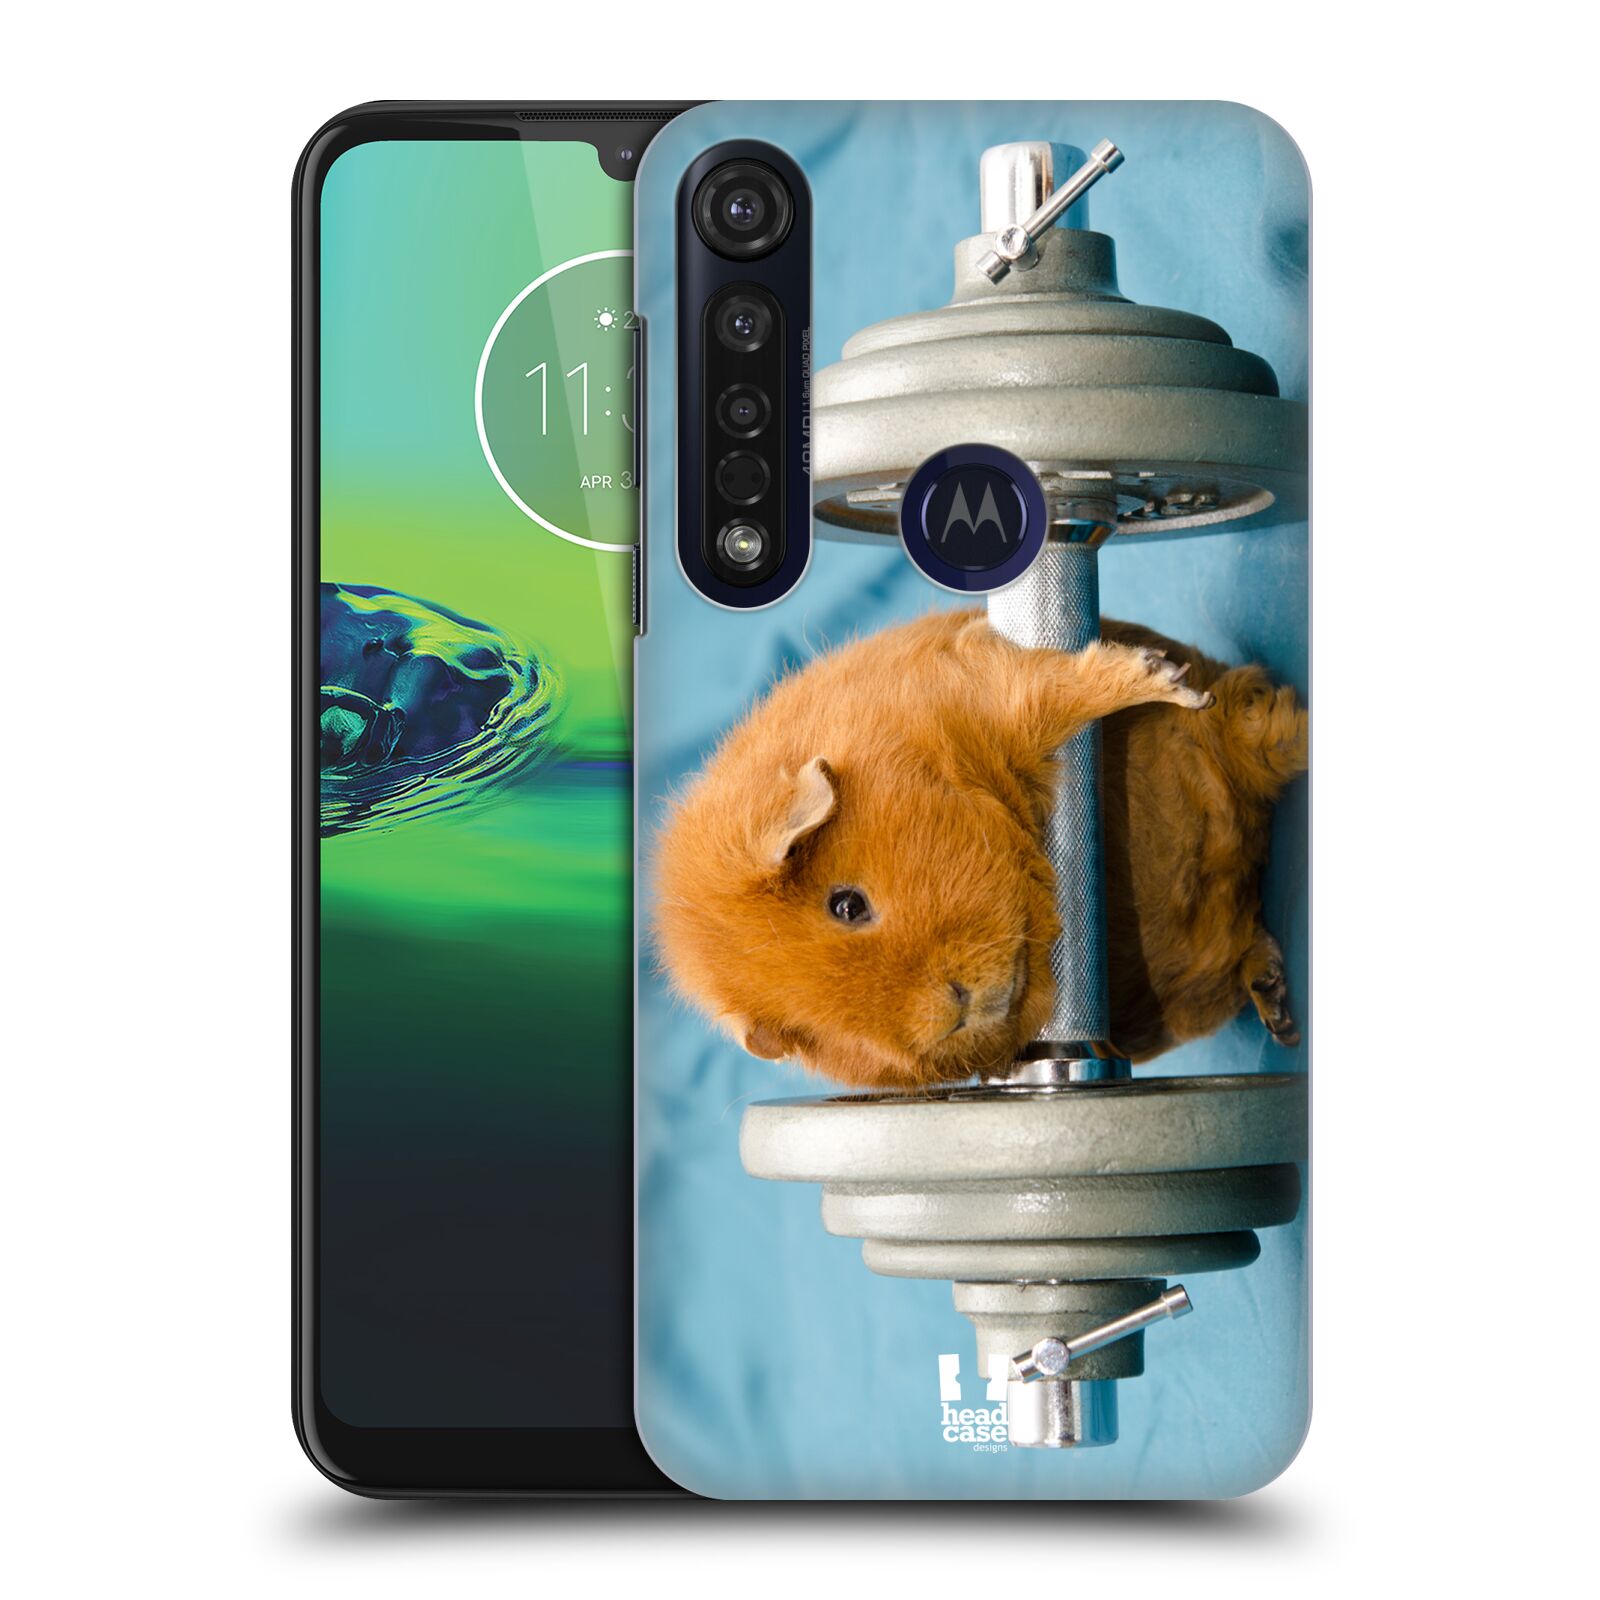 Pouzdro na mobil Motorola Moto G8 PLUS - HEAD CASE - vzor Legrační zvířátka křeček/morče silák